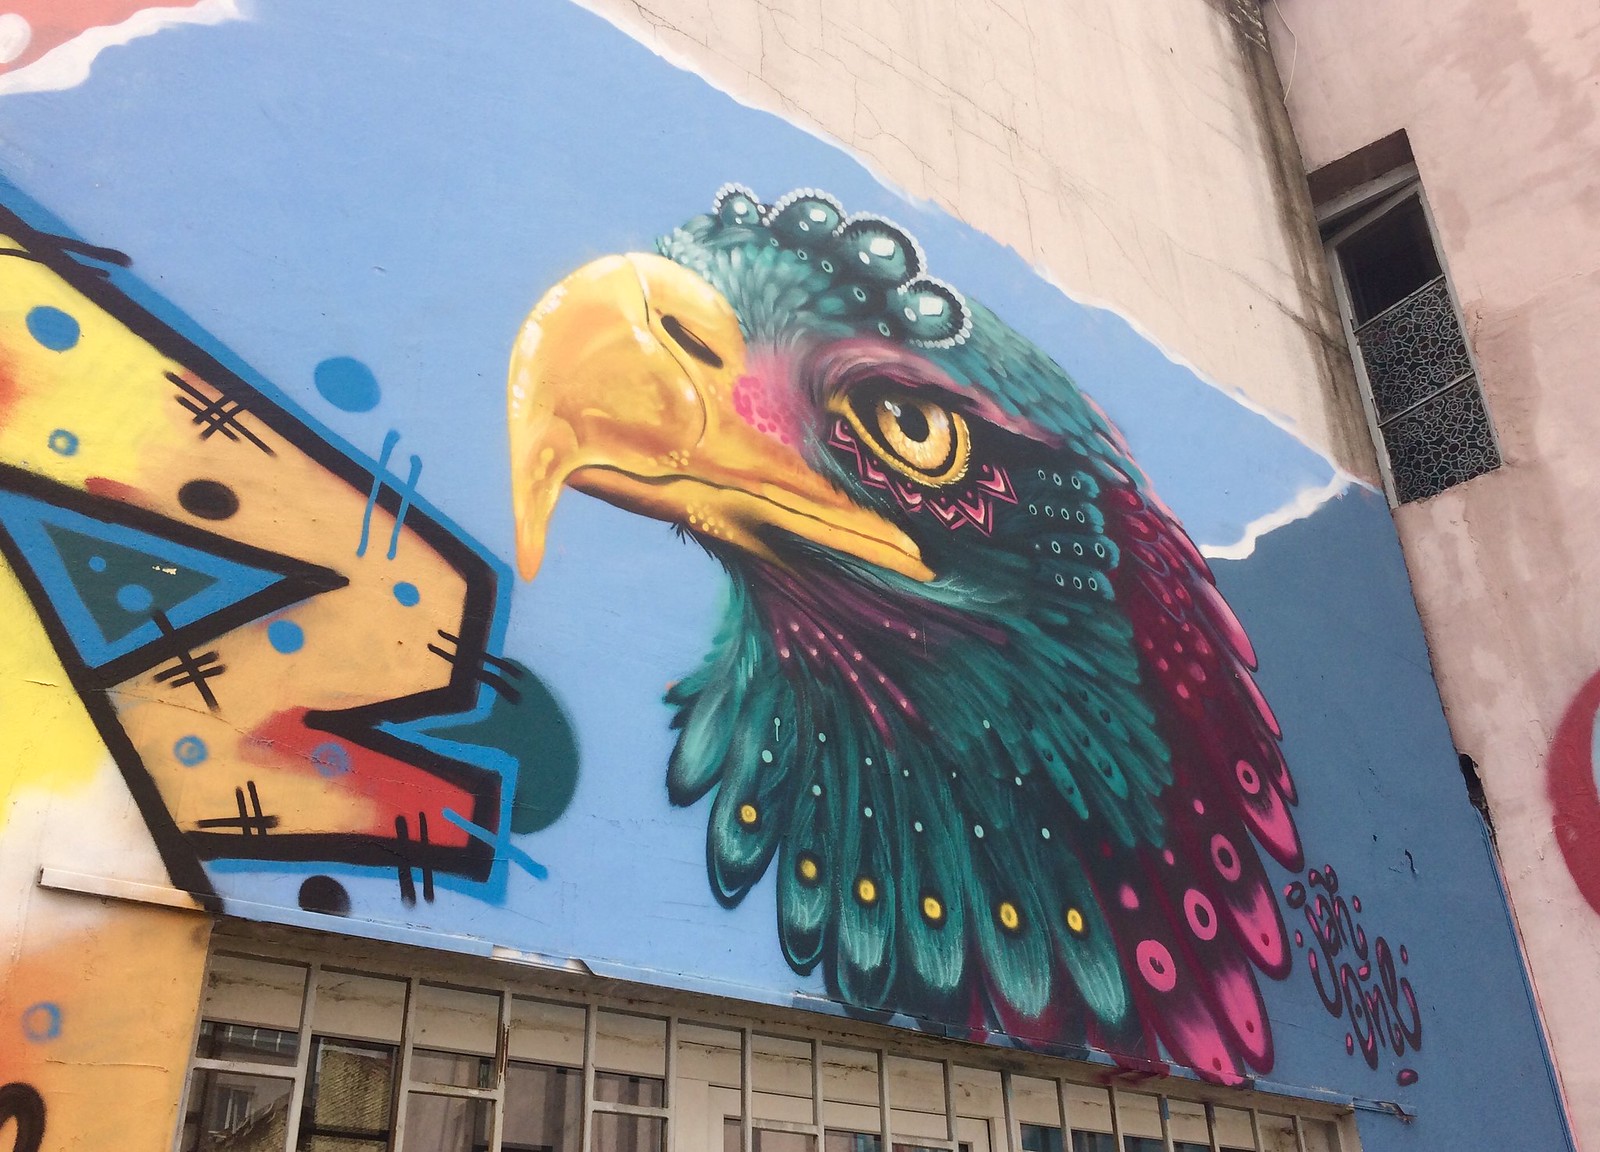 201705 - Balkans - Falcon Graffiti - Sofia - Oborishte - Sofia, May 21, 2017